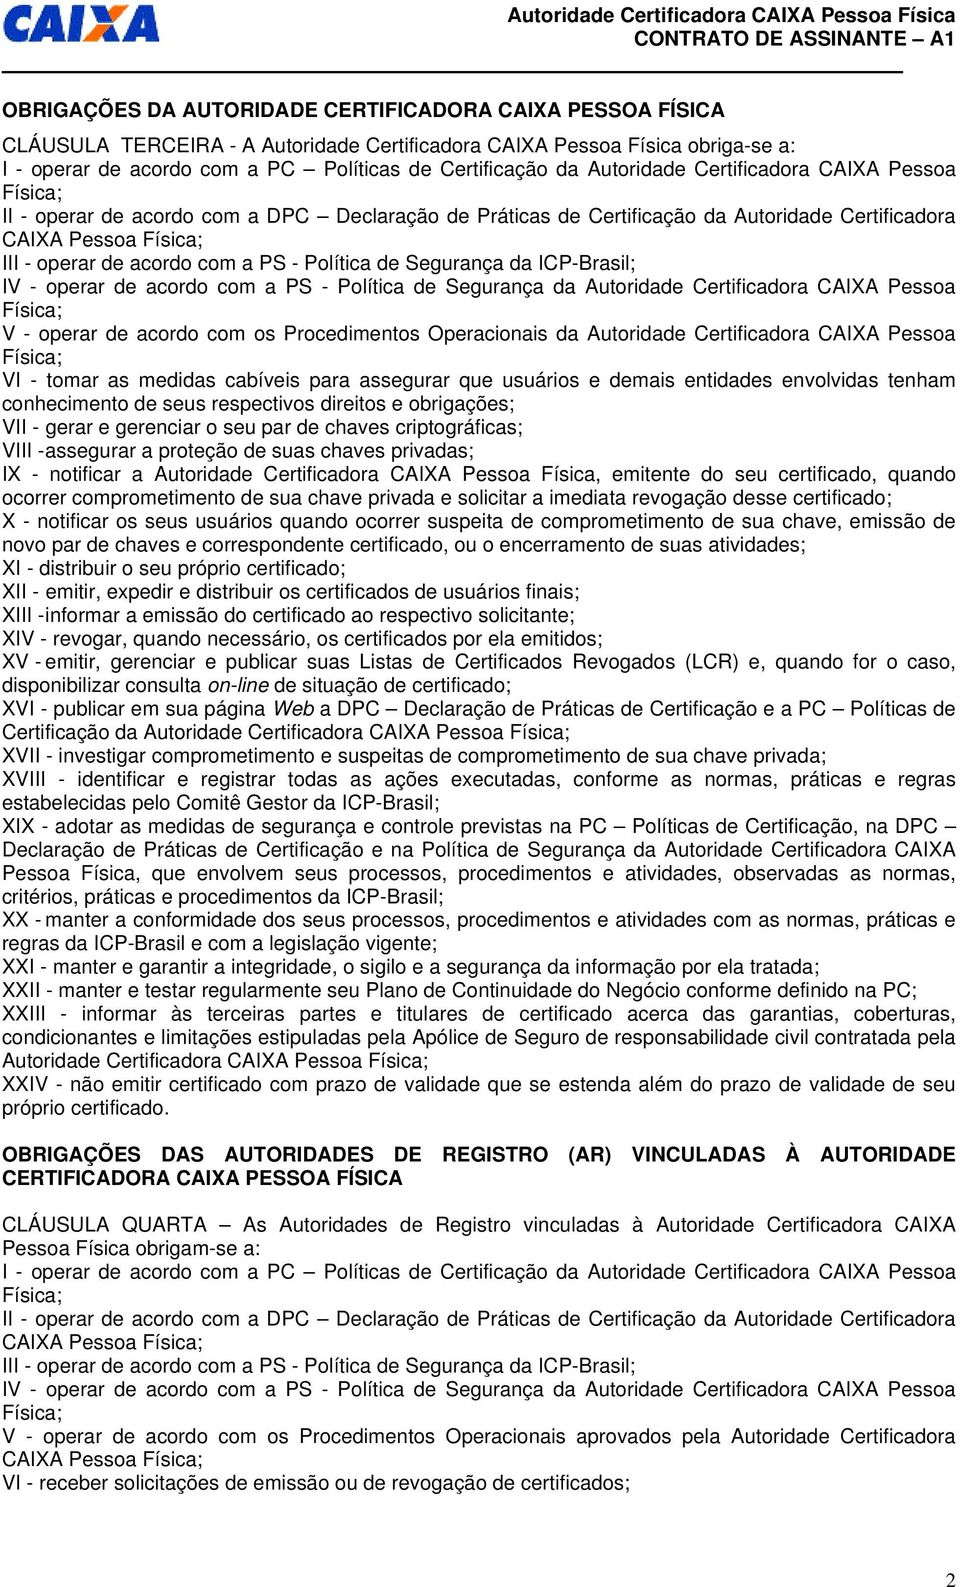 Segurança da ICP-Brasil; IV - operar de acordo com a PS - Política de Segurança da Autoridade Certificadora CAIXA Pessoa V - operar de acordo com os Procedimentos Operacionais da Autoridade